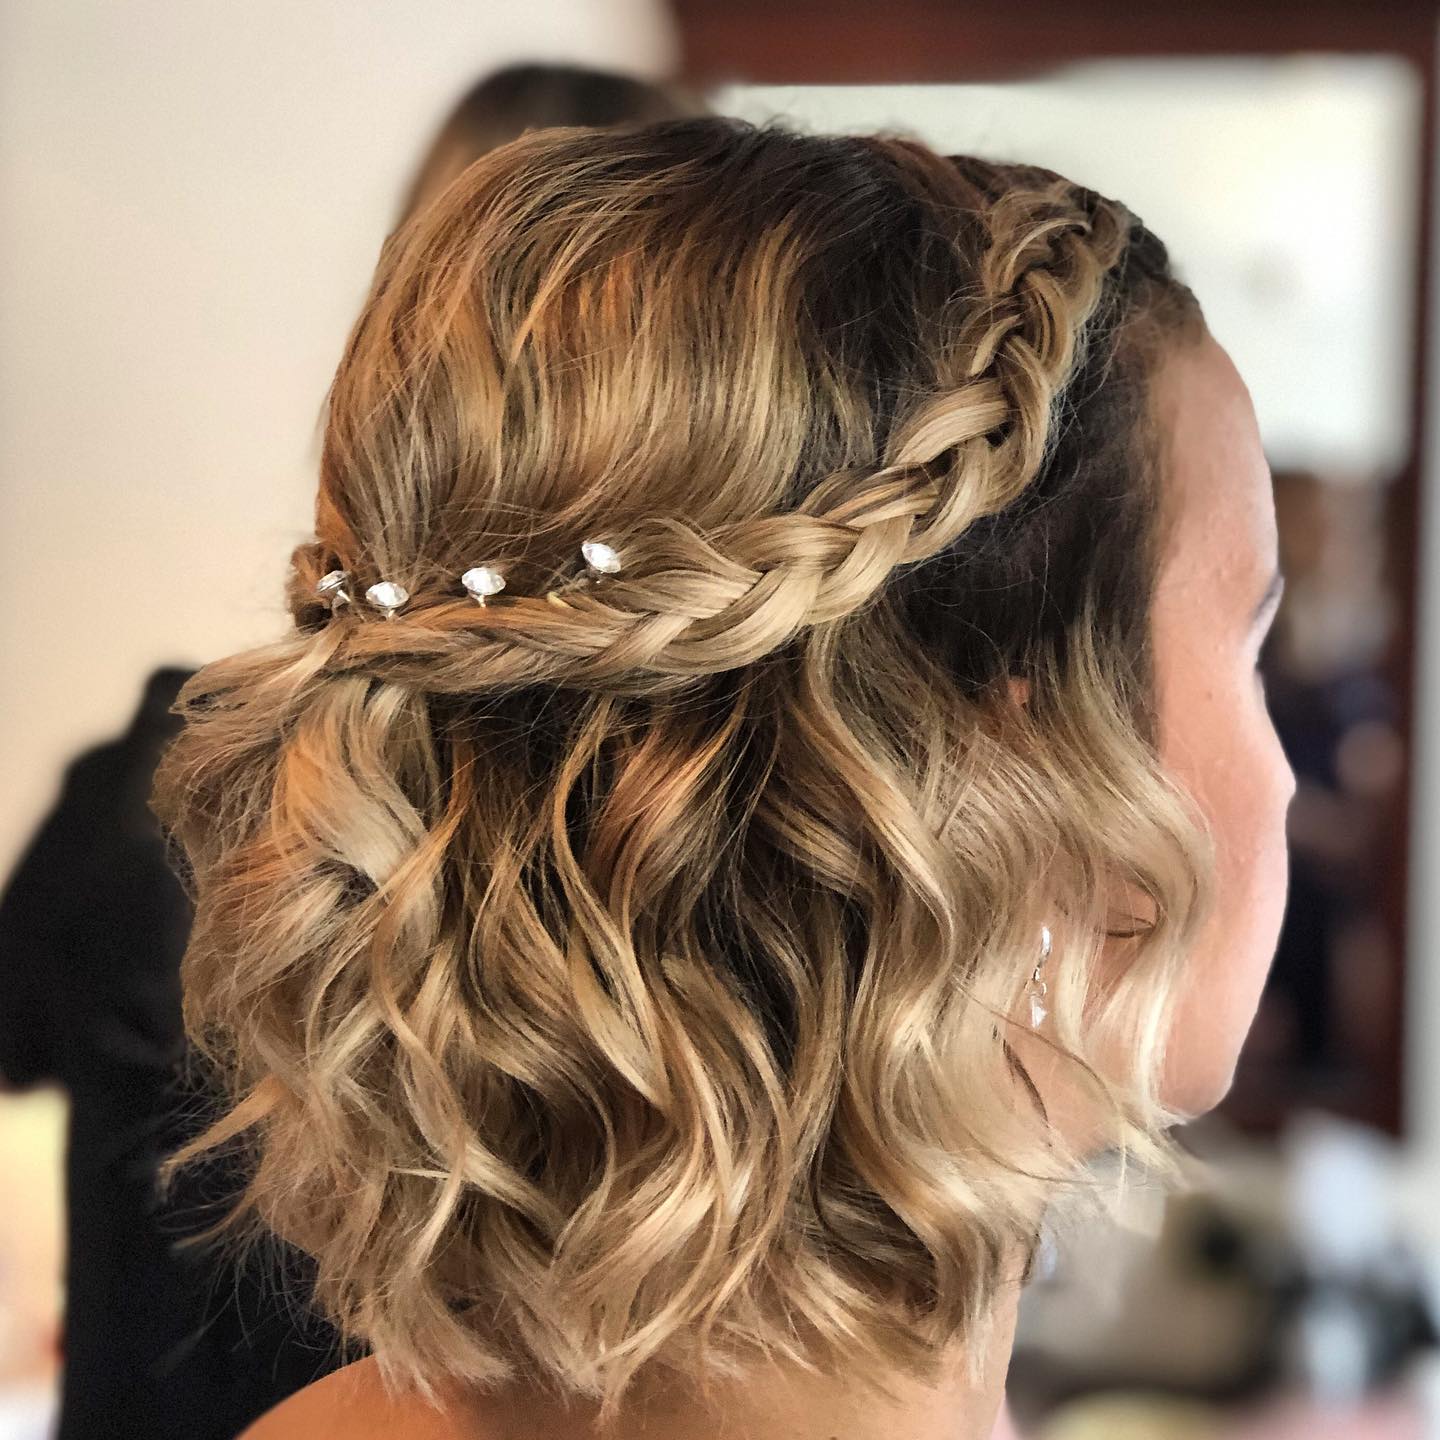 braided half up half down short bridesmaid hairstyle via hayleypennyhairstylist